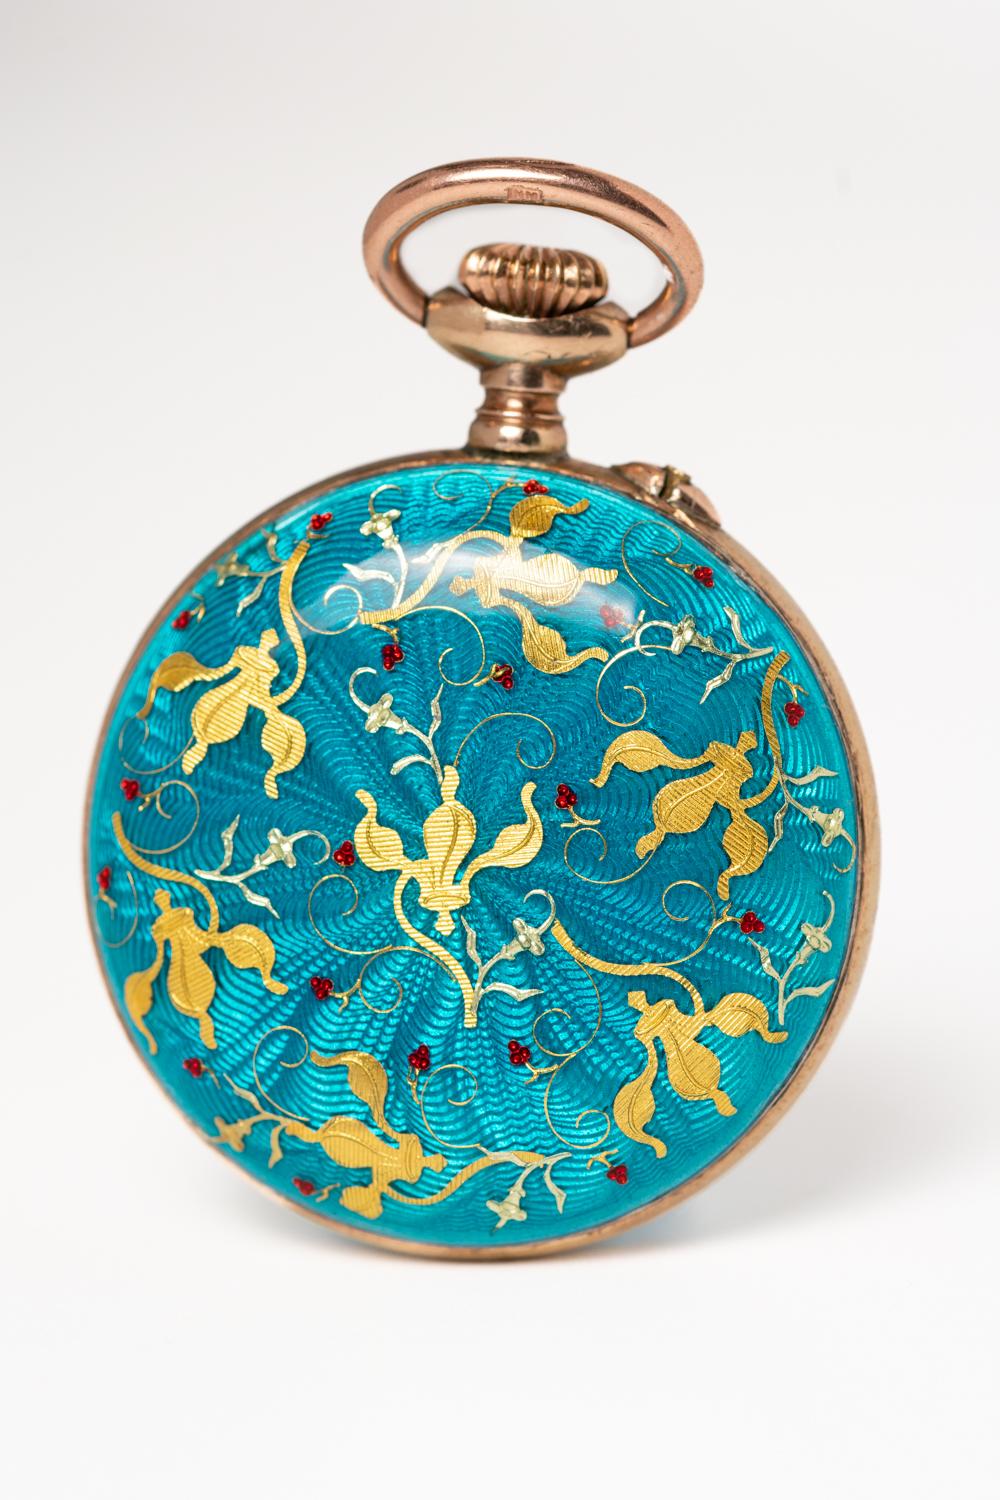 Montre de poche/pendentif en argent doré et émail guilloché bleu turquoise, datant d'environ 1900, fabriqué par Fauvette HAD. Cette pièce remarquable est décorée d'un motif de fleur de lys émaillé d'or et est en excellent état compte tenu de son